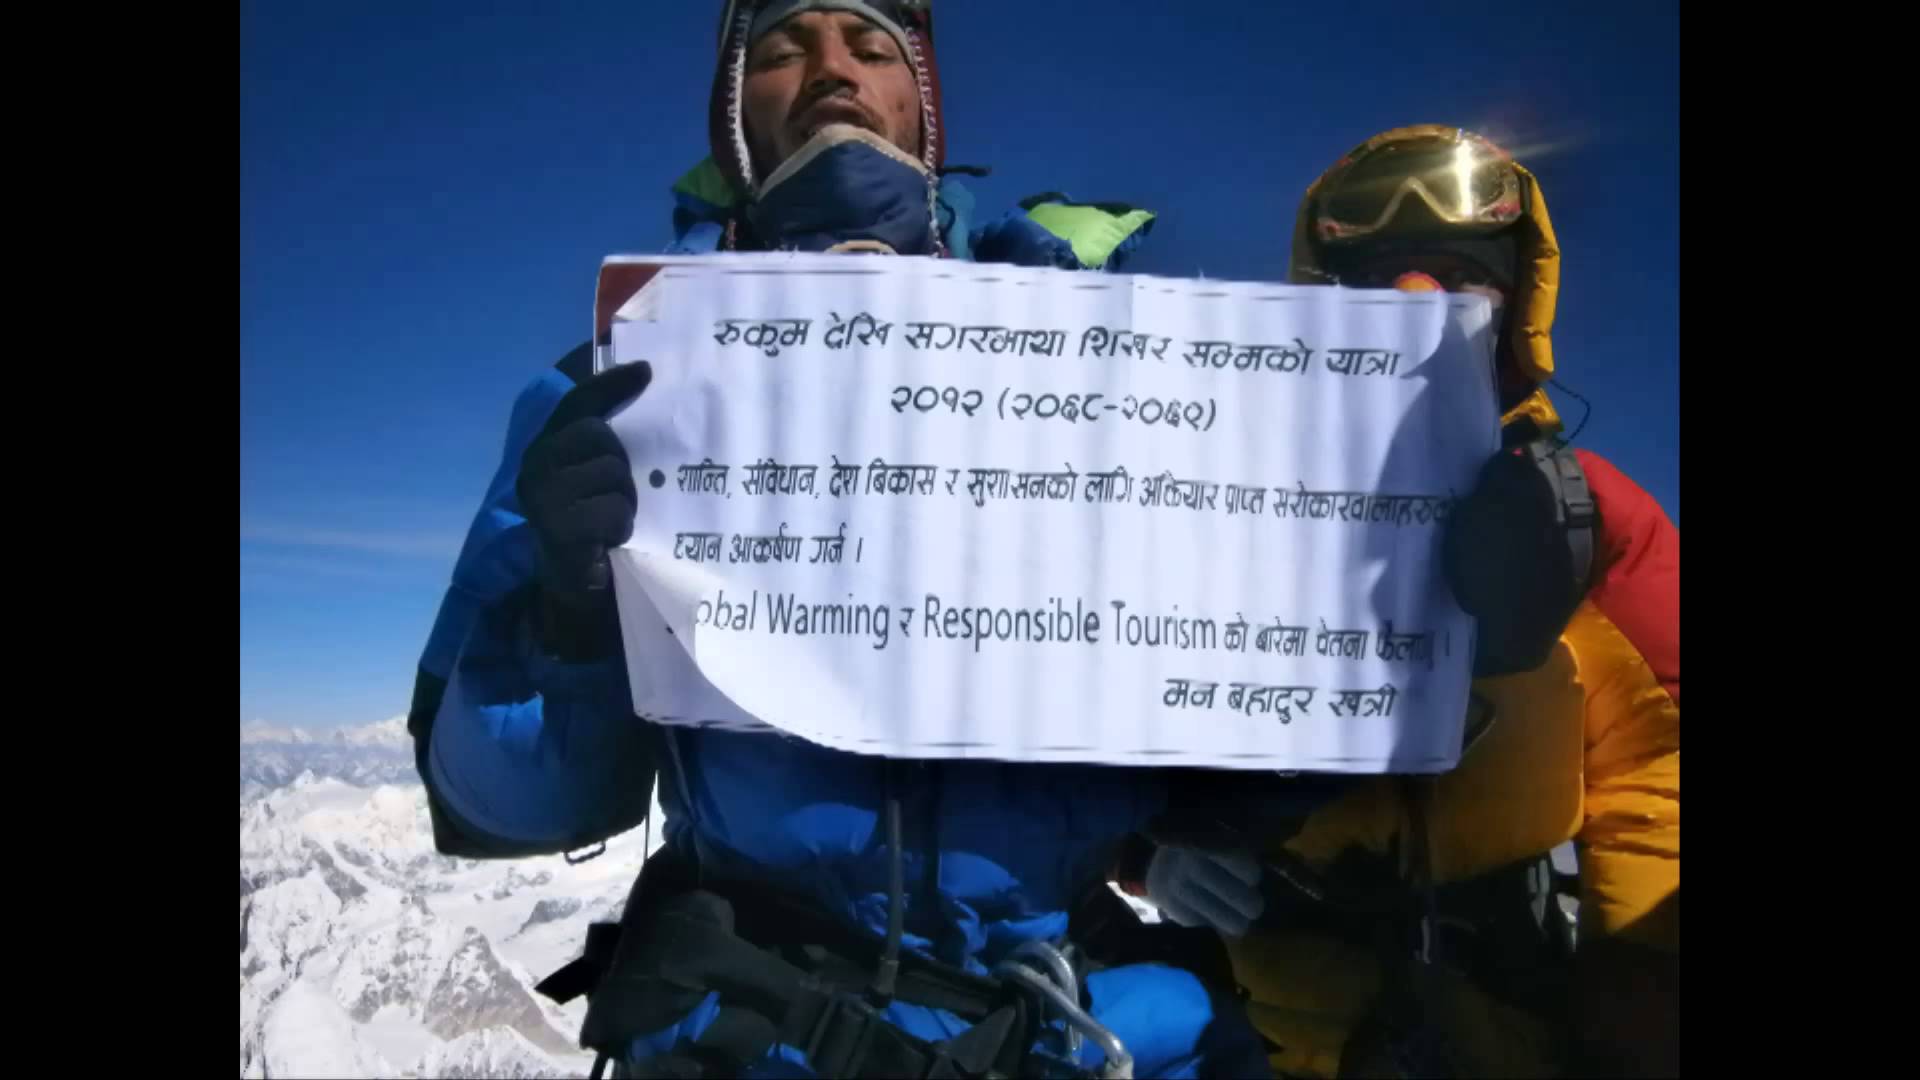 Bhim Bahadur Khatri, 35 tuổi, một hướng dẫn viên du lịch người bản địa Himalaya sống sót sau trận lở tuyết kinh hoàng trên dãy núi Everest do ảnh hưởng của trận động đất mạnh 7,9 độ richter ở Nepal ngày 25/4. Khatri đã phải dùng tay đào hàng chục cm tuyết để thoát khỏi bức tường tuyết khổng lồ 